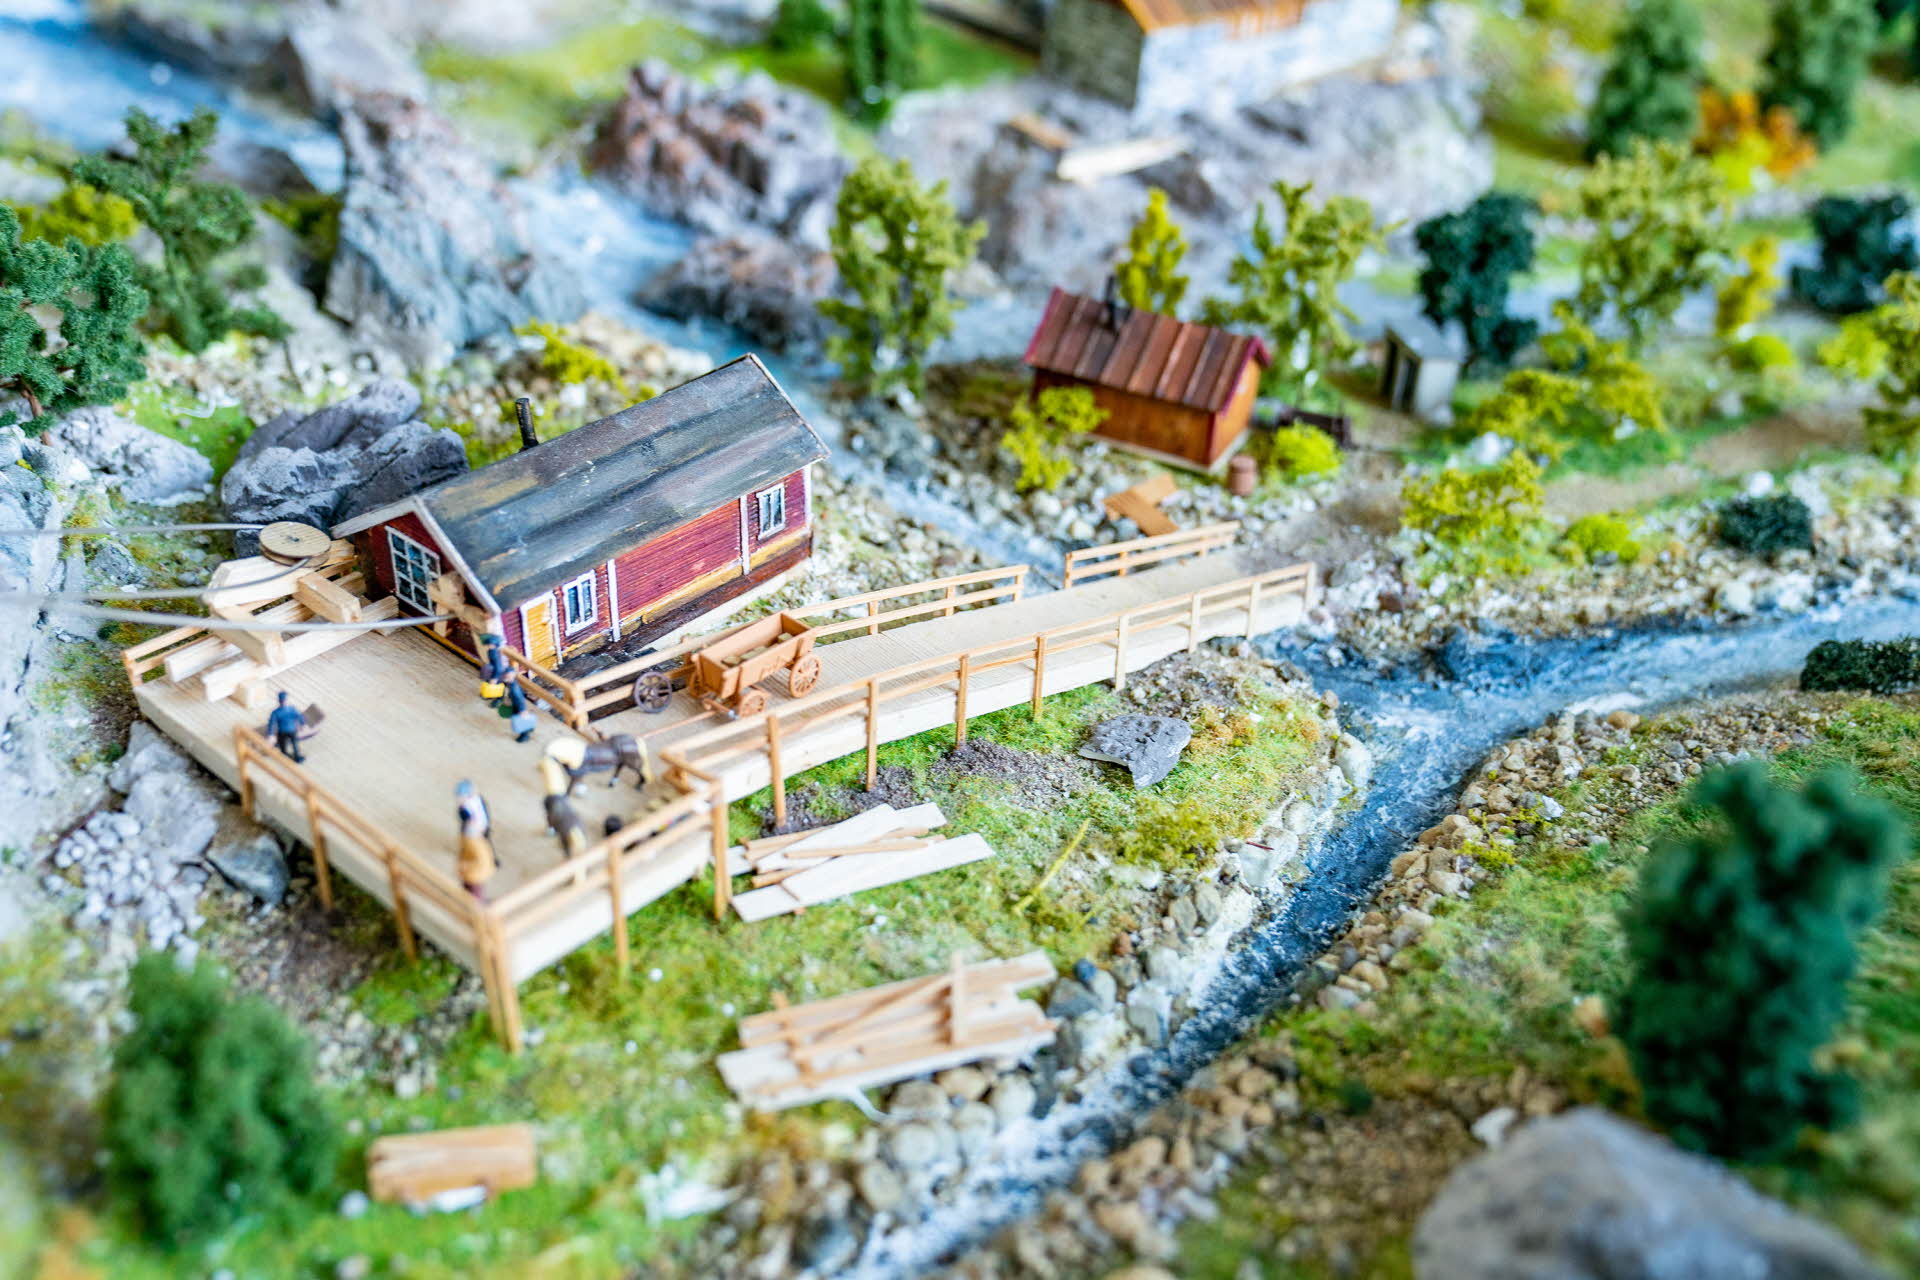 オーフォート鉄道の建物模型。小川のそばにあるプラットフォームの付いた家。